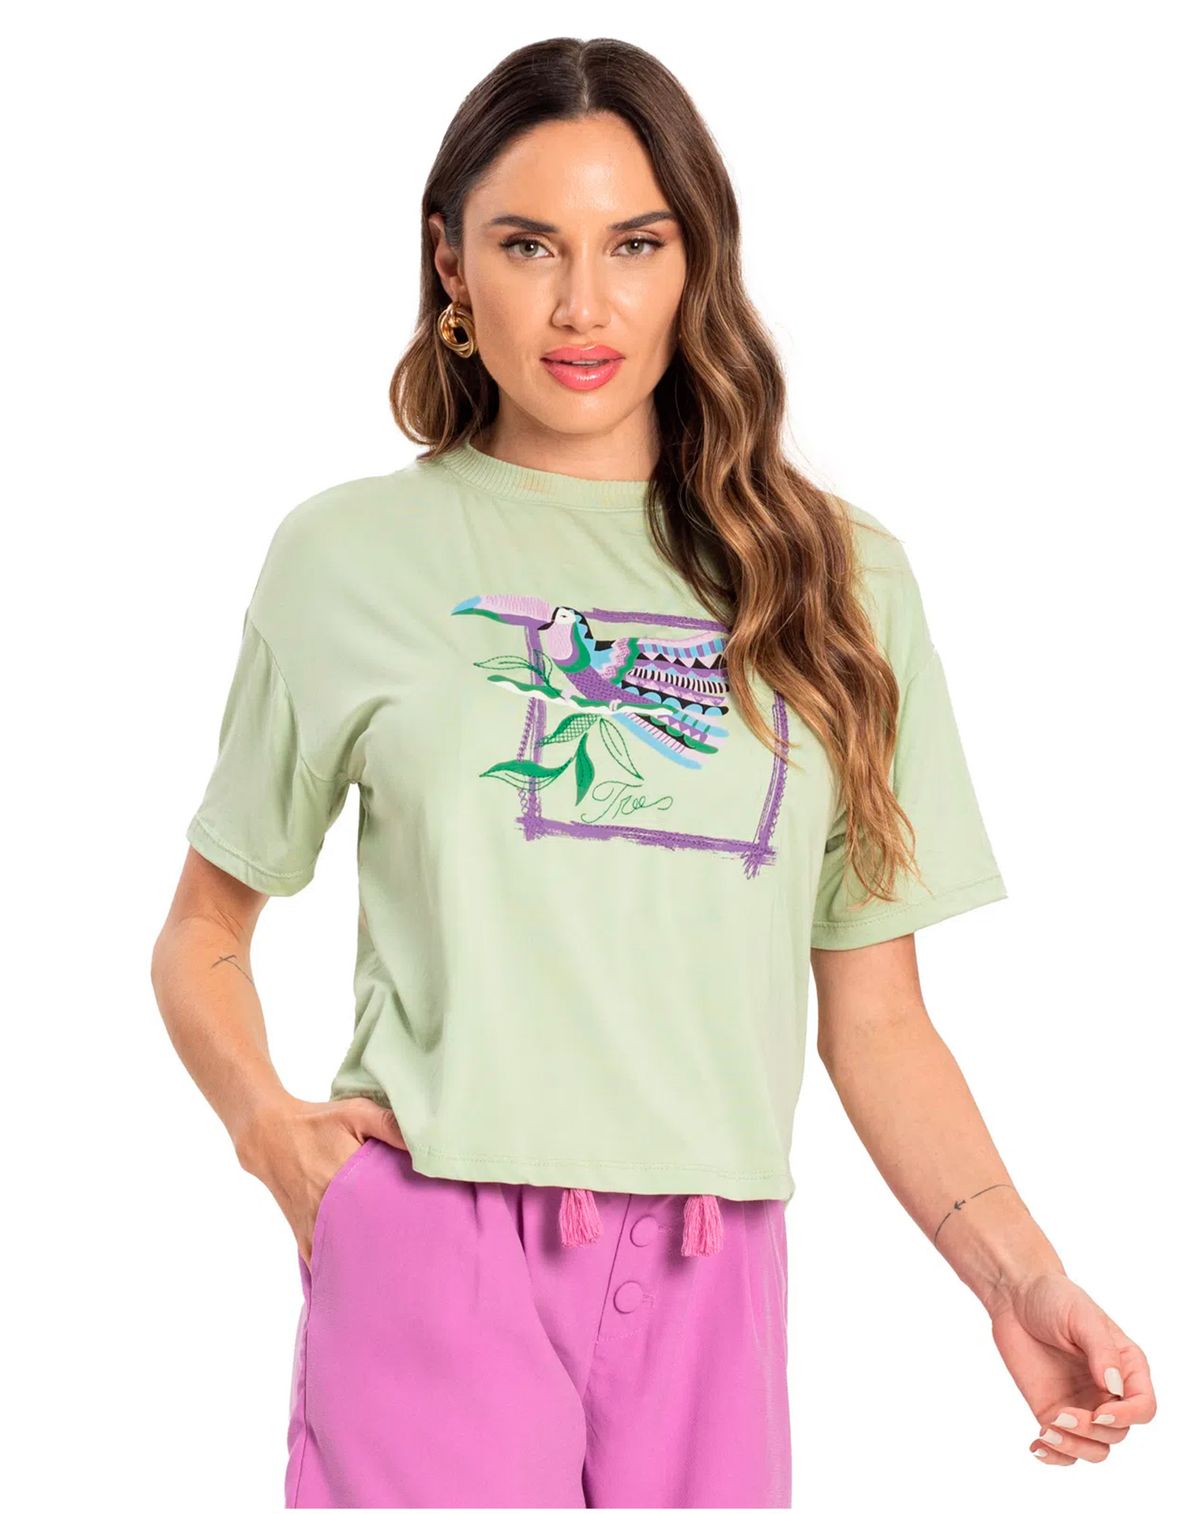 670632007-camiseta-manga-curta-feminina-estampa-tucano-verde-g-fd3